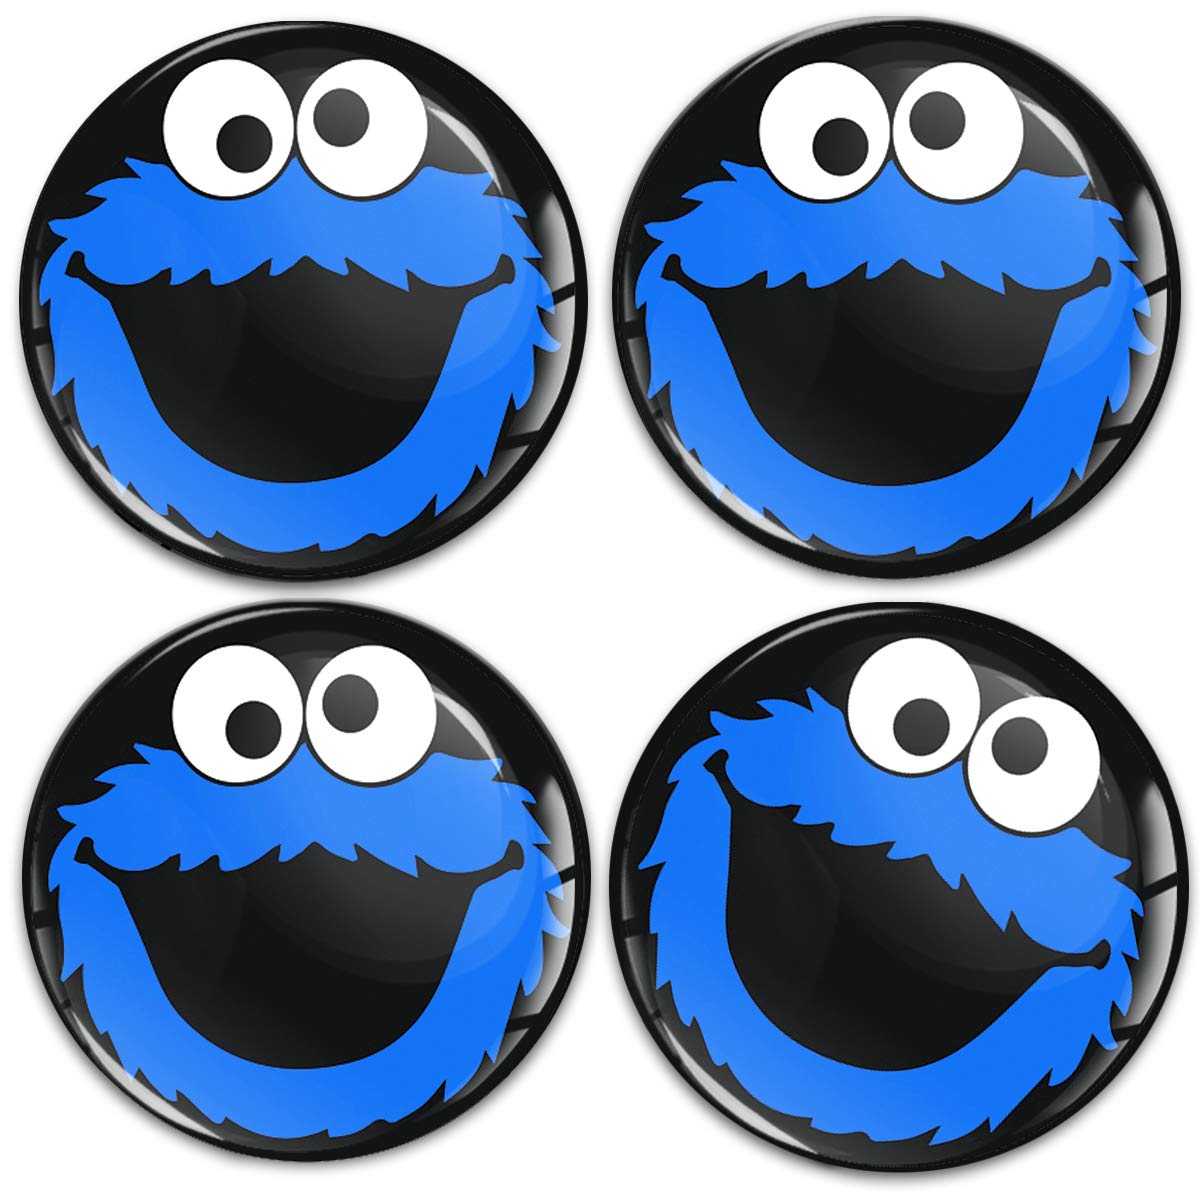 SkinoEu Aufkleber Autoaufkleber für Radkappen Nabenkappen Nabendeckel Radnabendeckel Rad-Aufkleber 65mm Schwarz Blau Elmo Cookie Monster A 5865 von SkinoEu